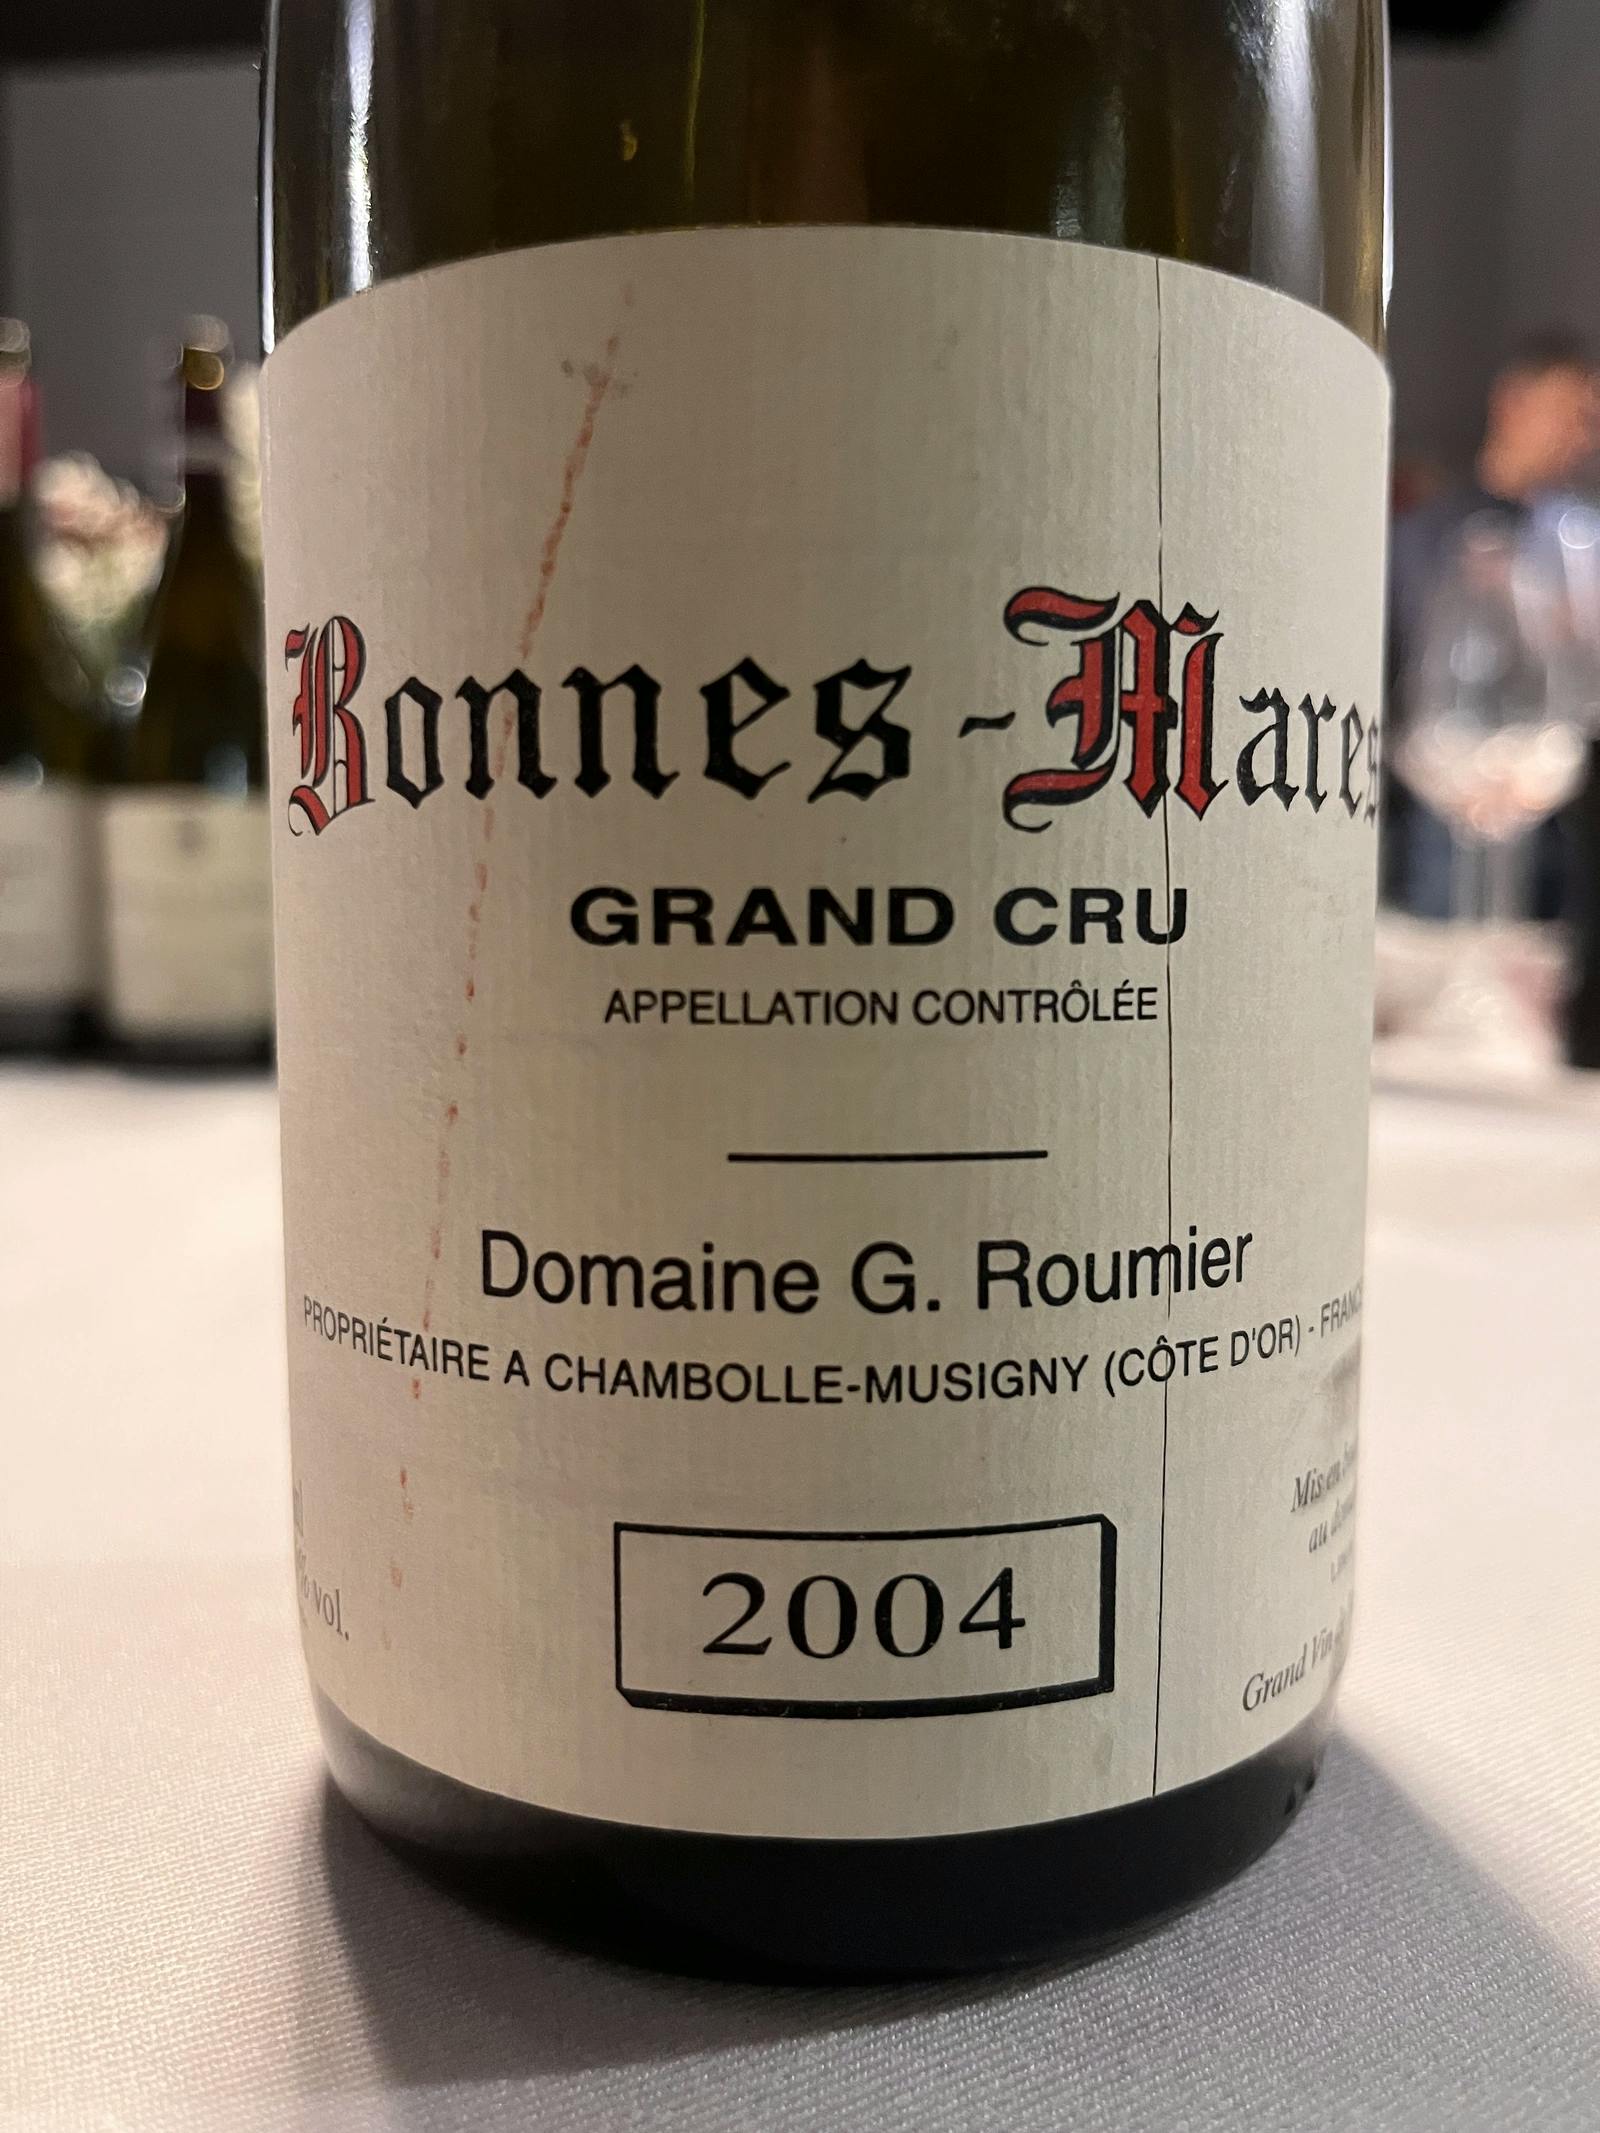 Domaine G. Roumier Bonnes-Mares Grand Cru 2004